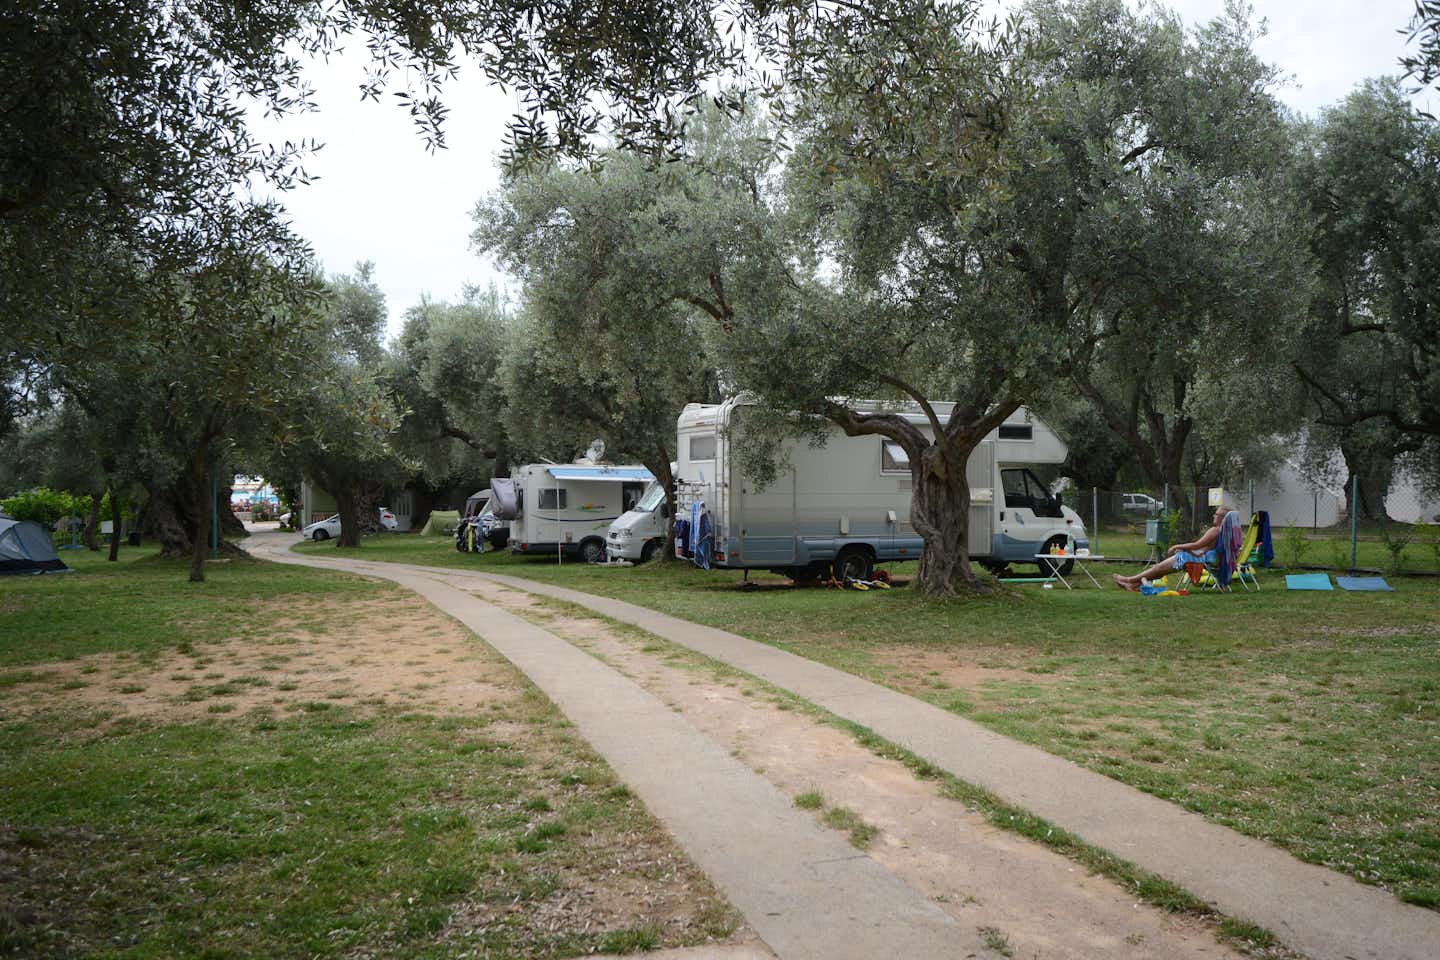 Camping Oliva - Wohnwagen- und Zeltstellplatz vom Campingplatz zwischen Bäumen